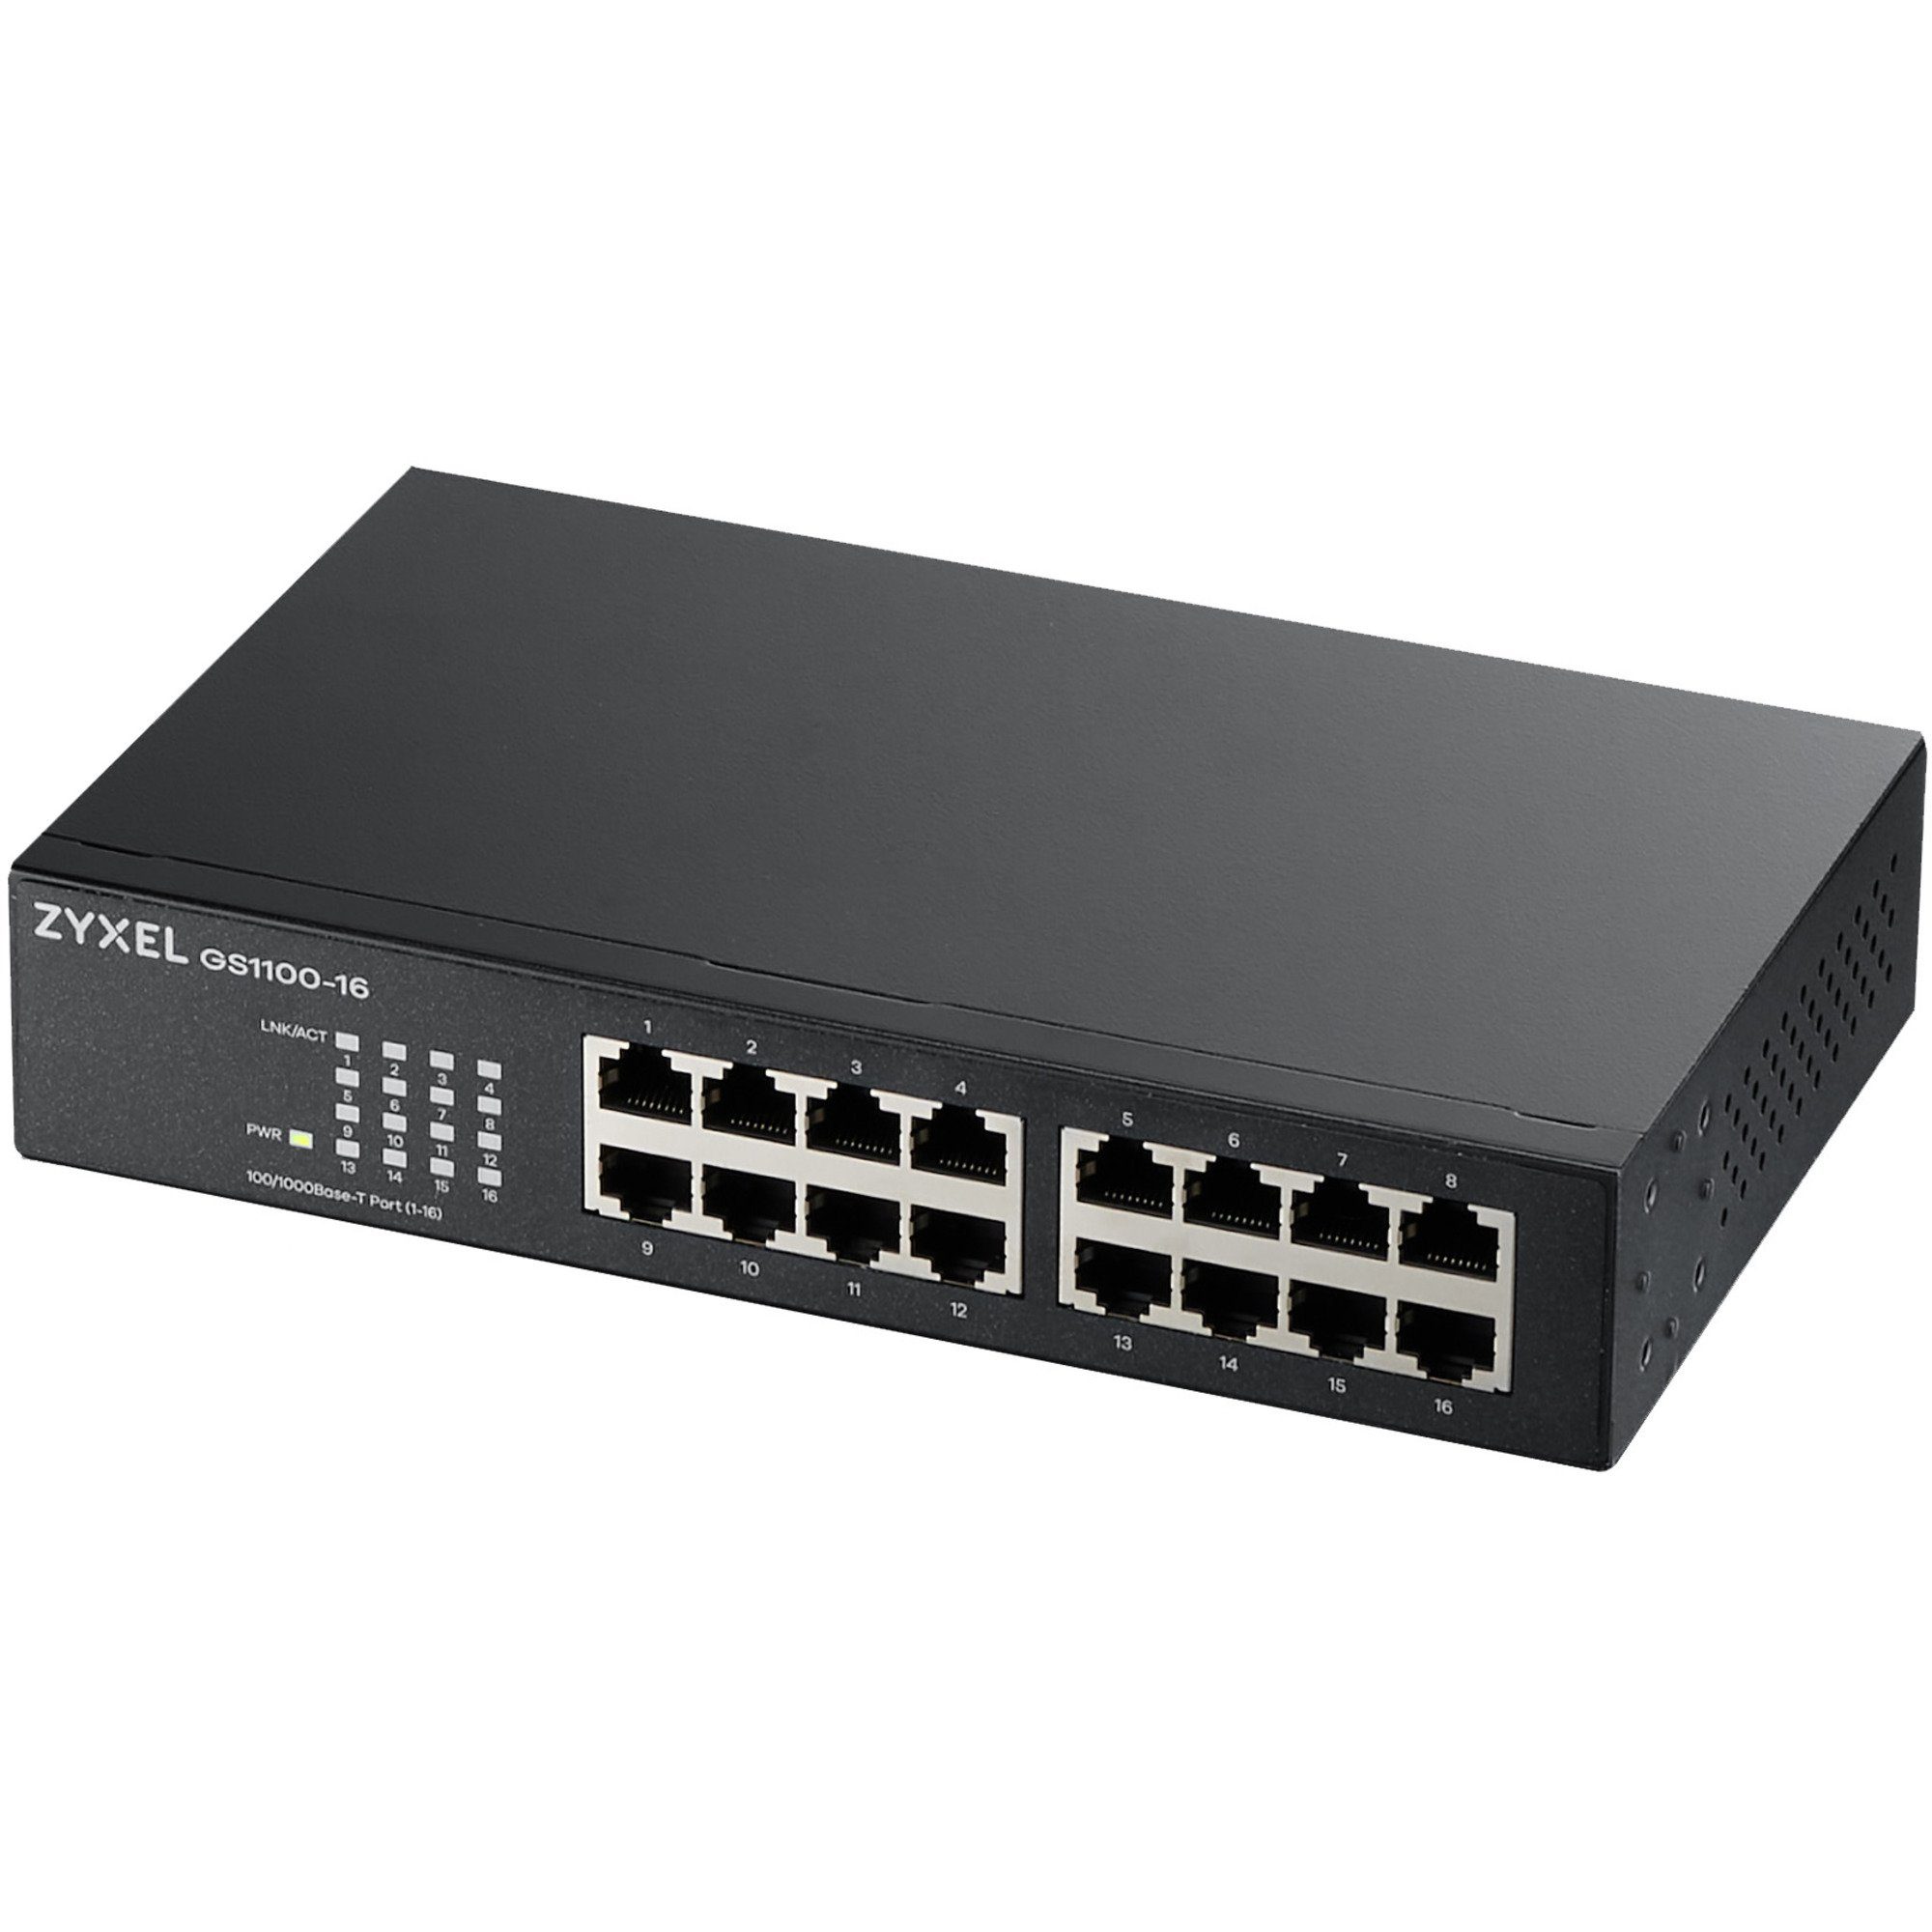 Zyxel GS1100-16 rev. 3 Netzwerk-Switch